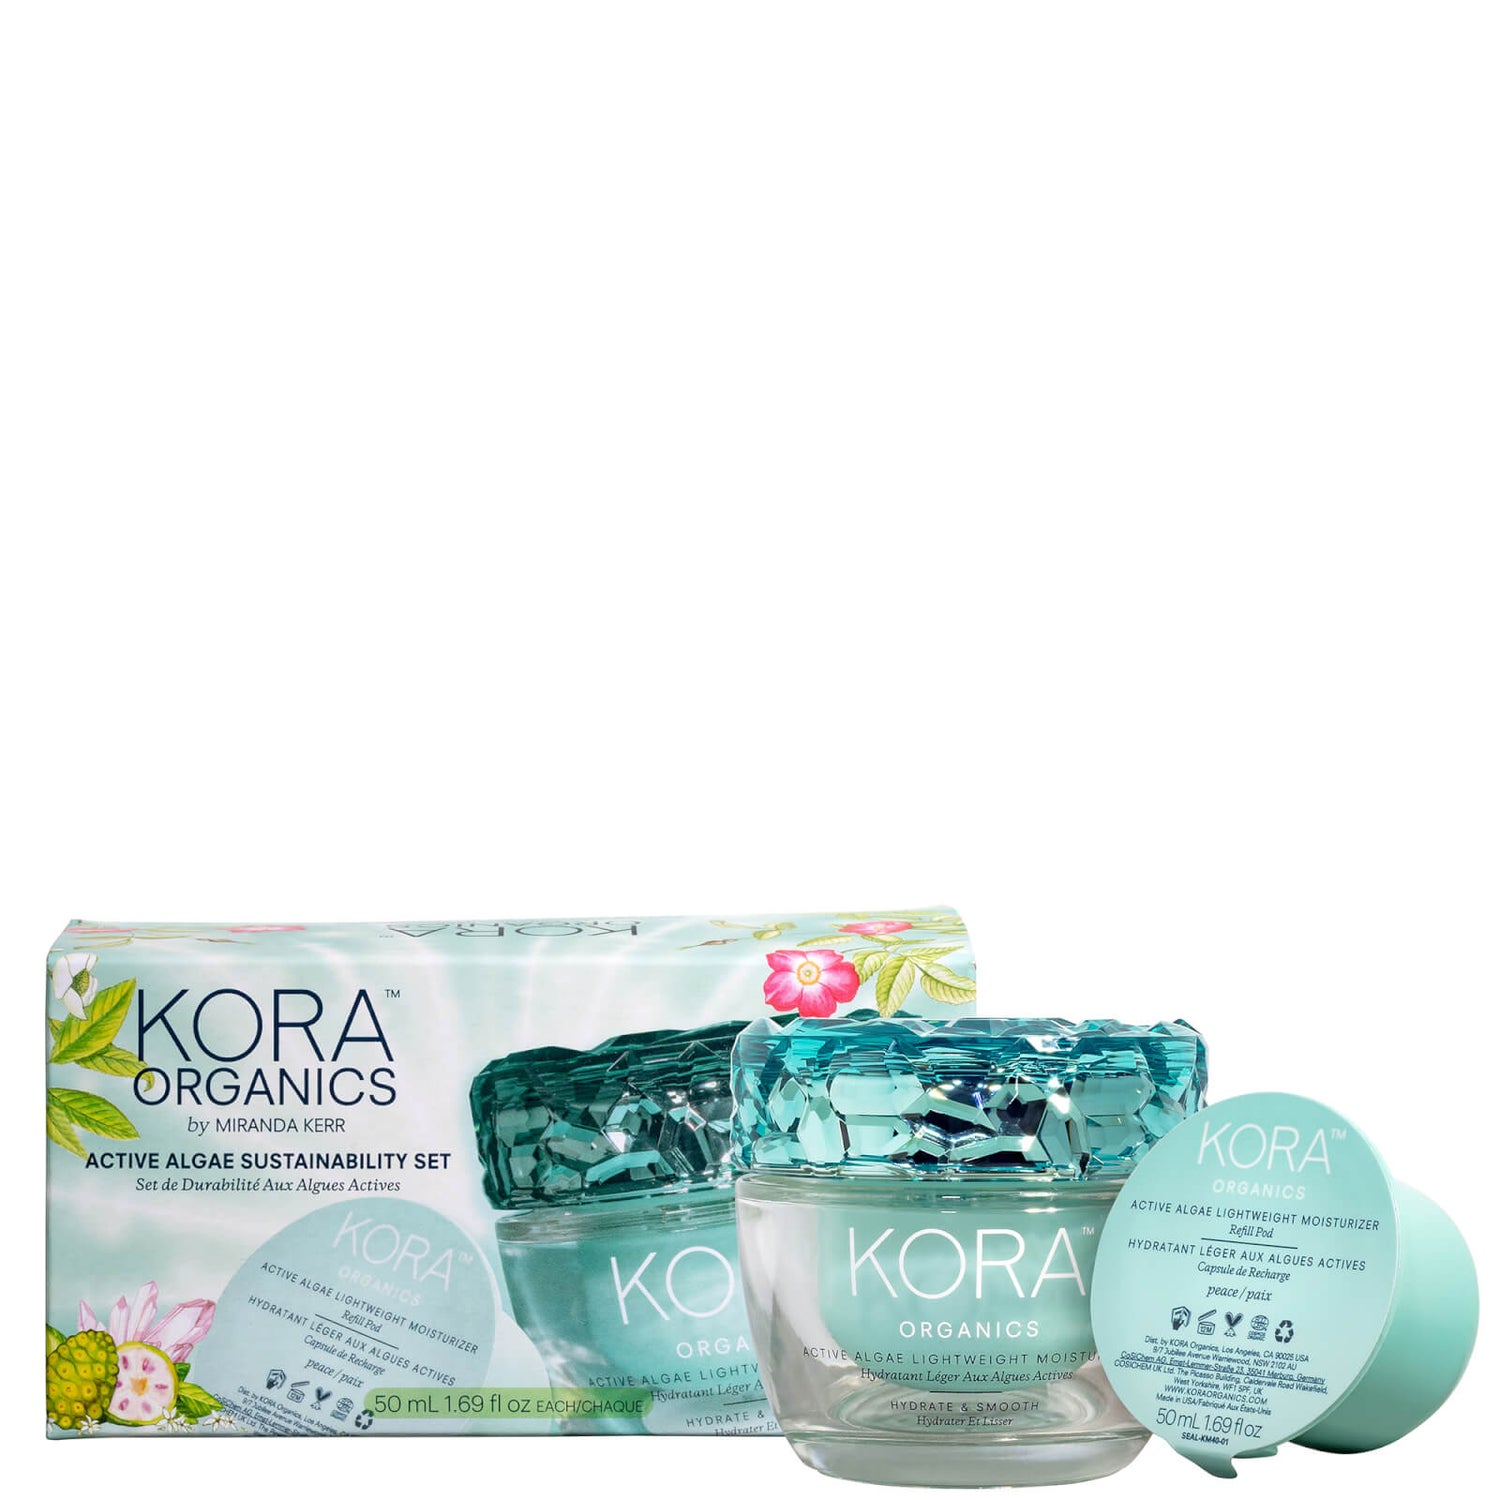 Kora Organics Active Algae Sustainability Set